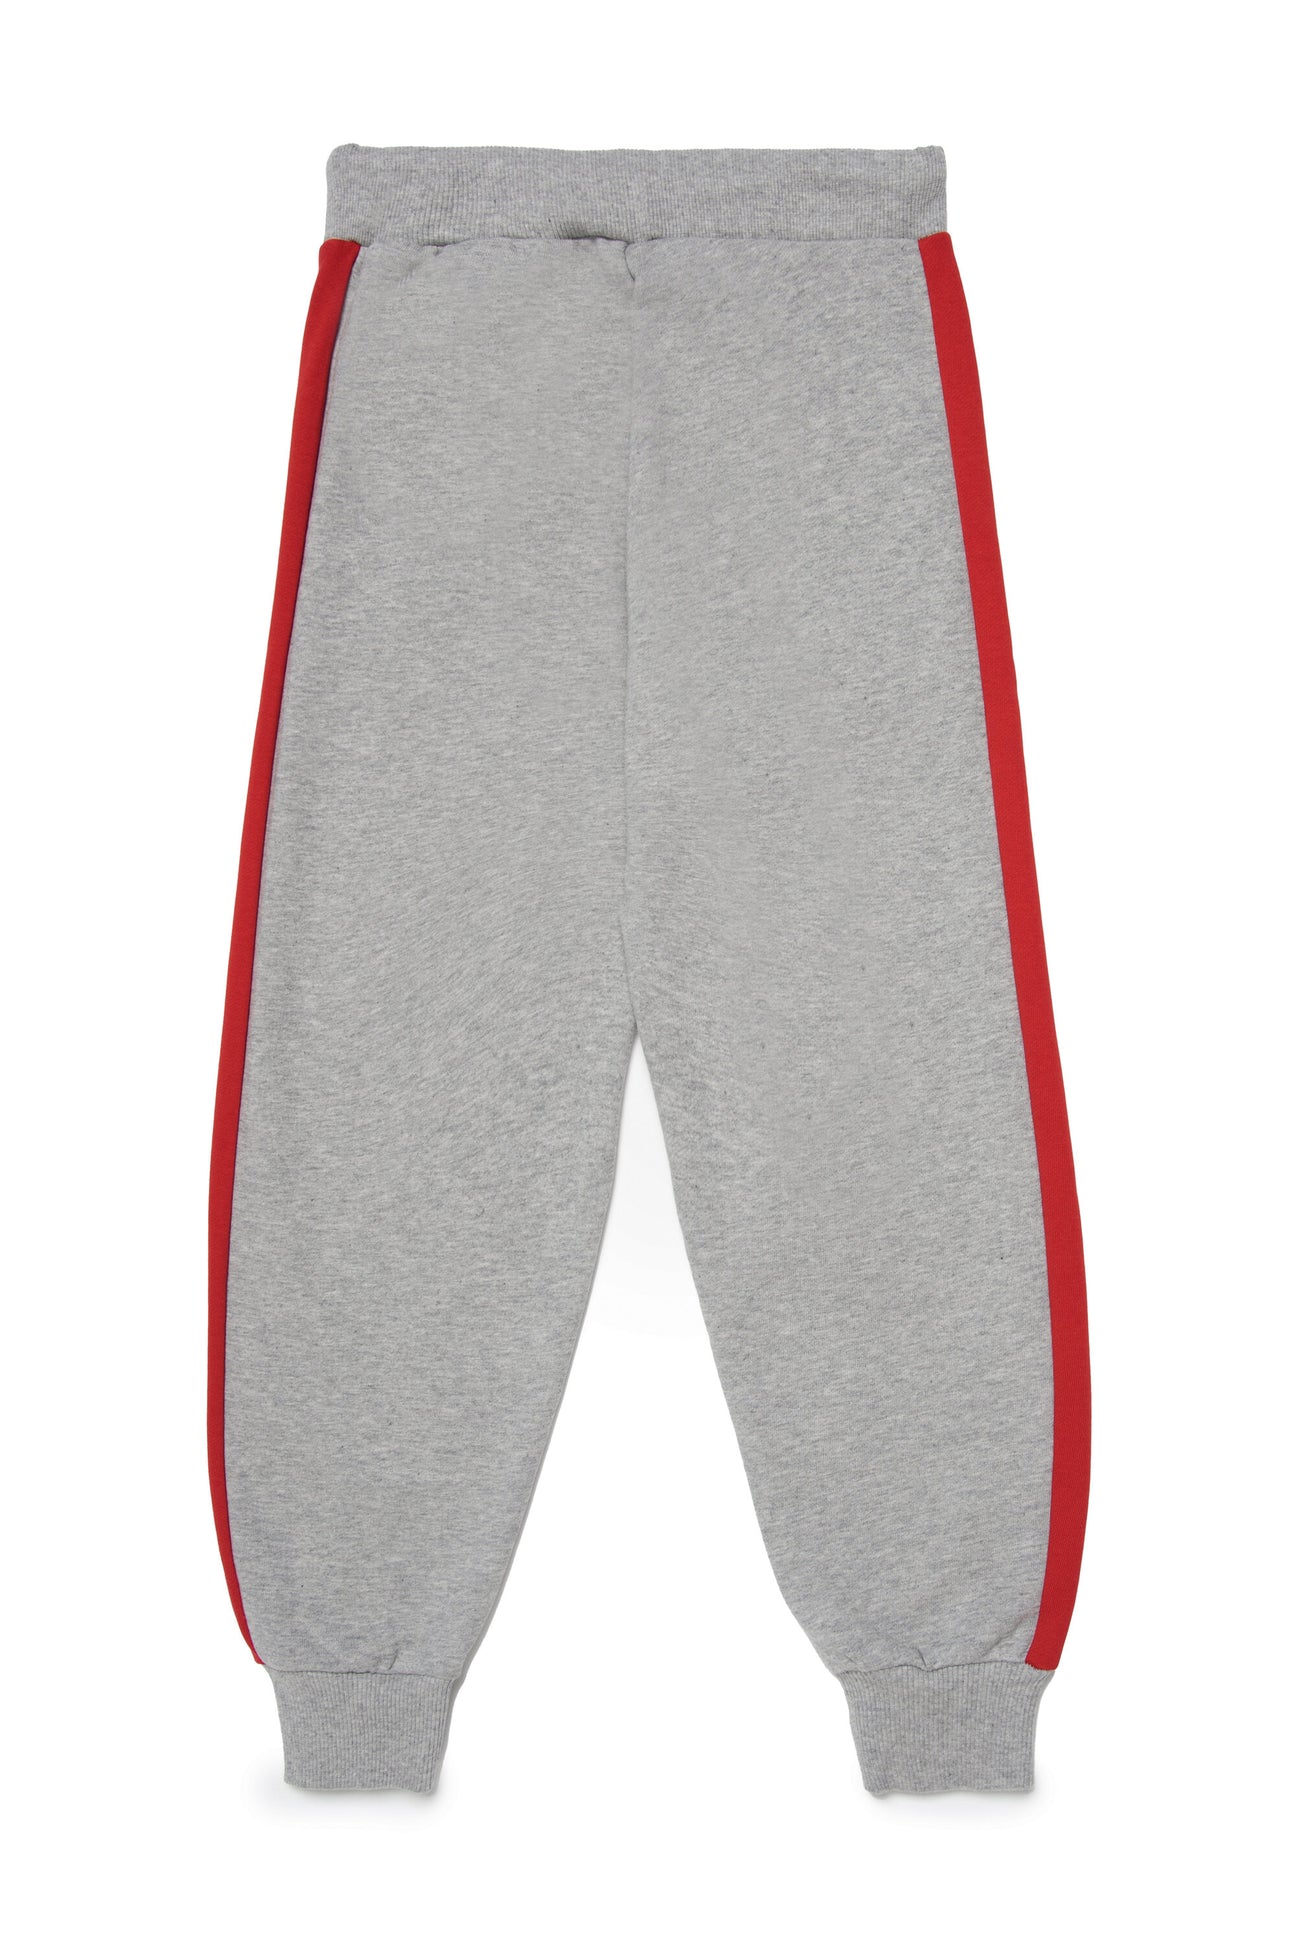 Pantalones deportivos en chándal con marca en chándal  colorblock Pantalones deportivos en chándal con marca en chándal  colorblock